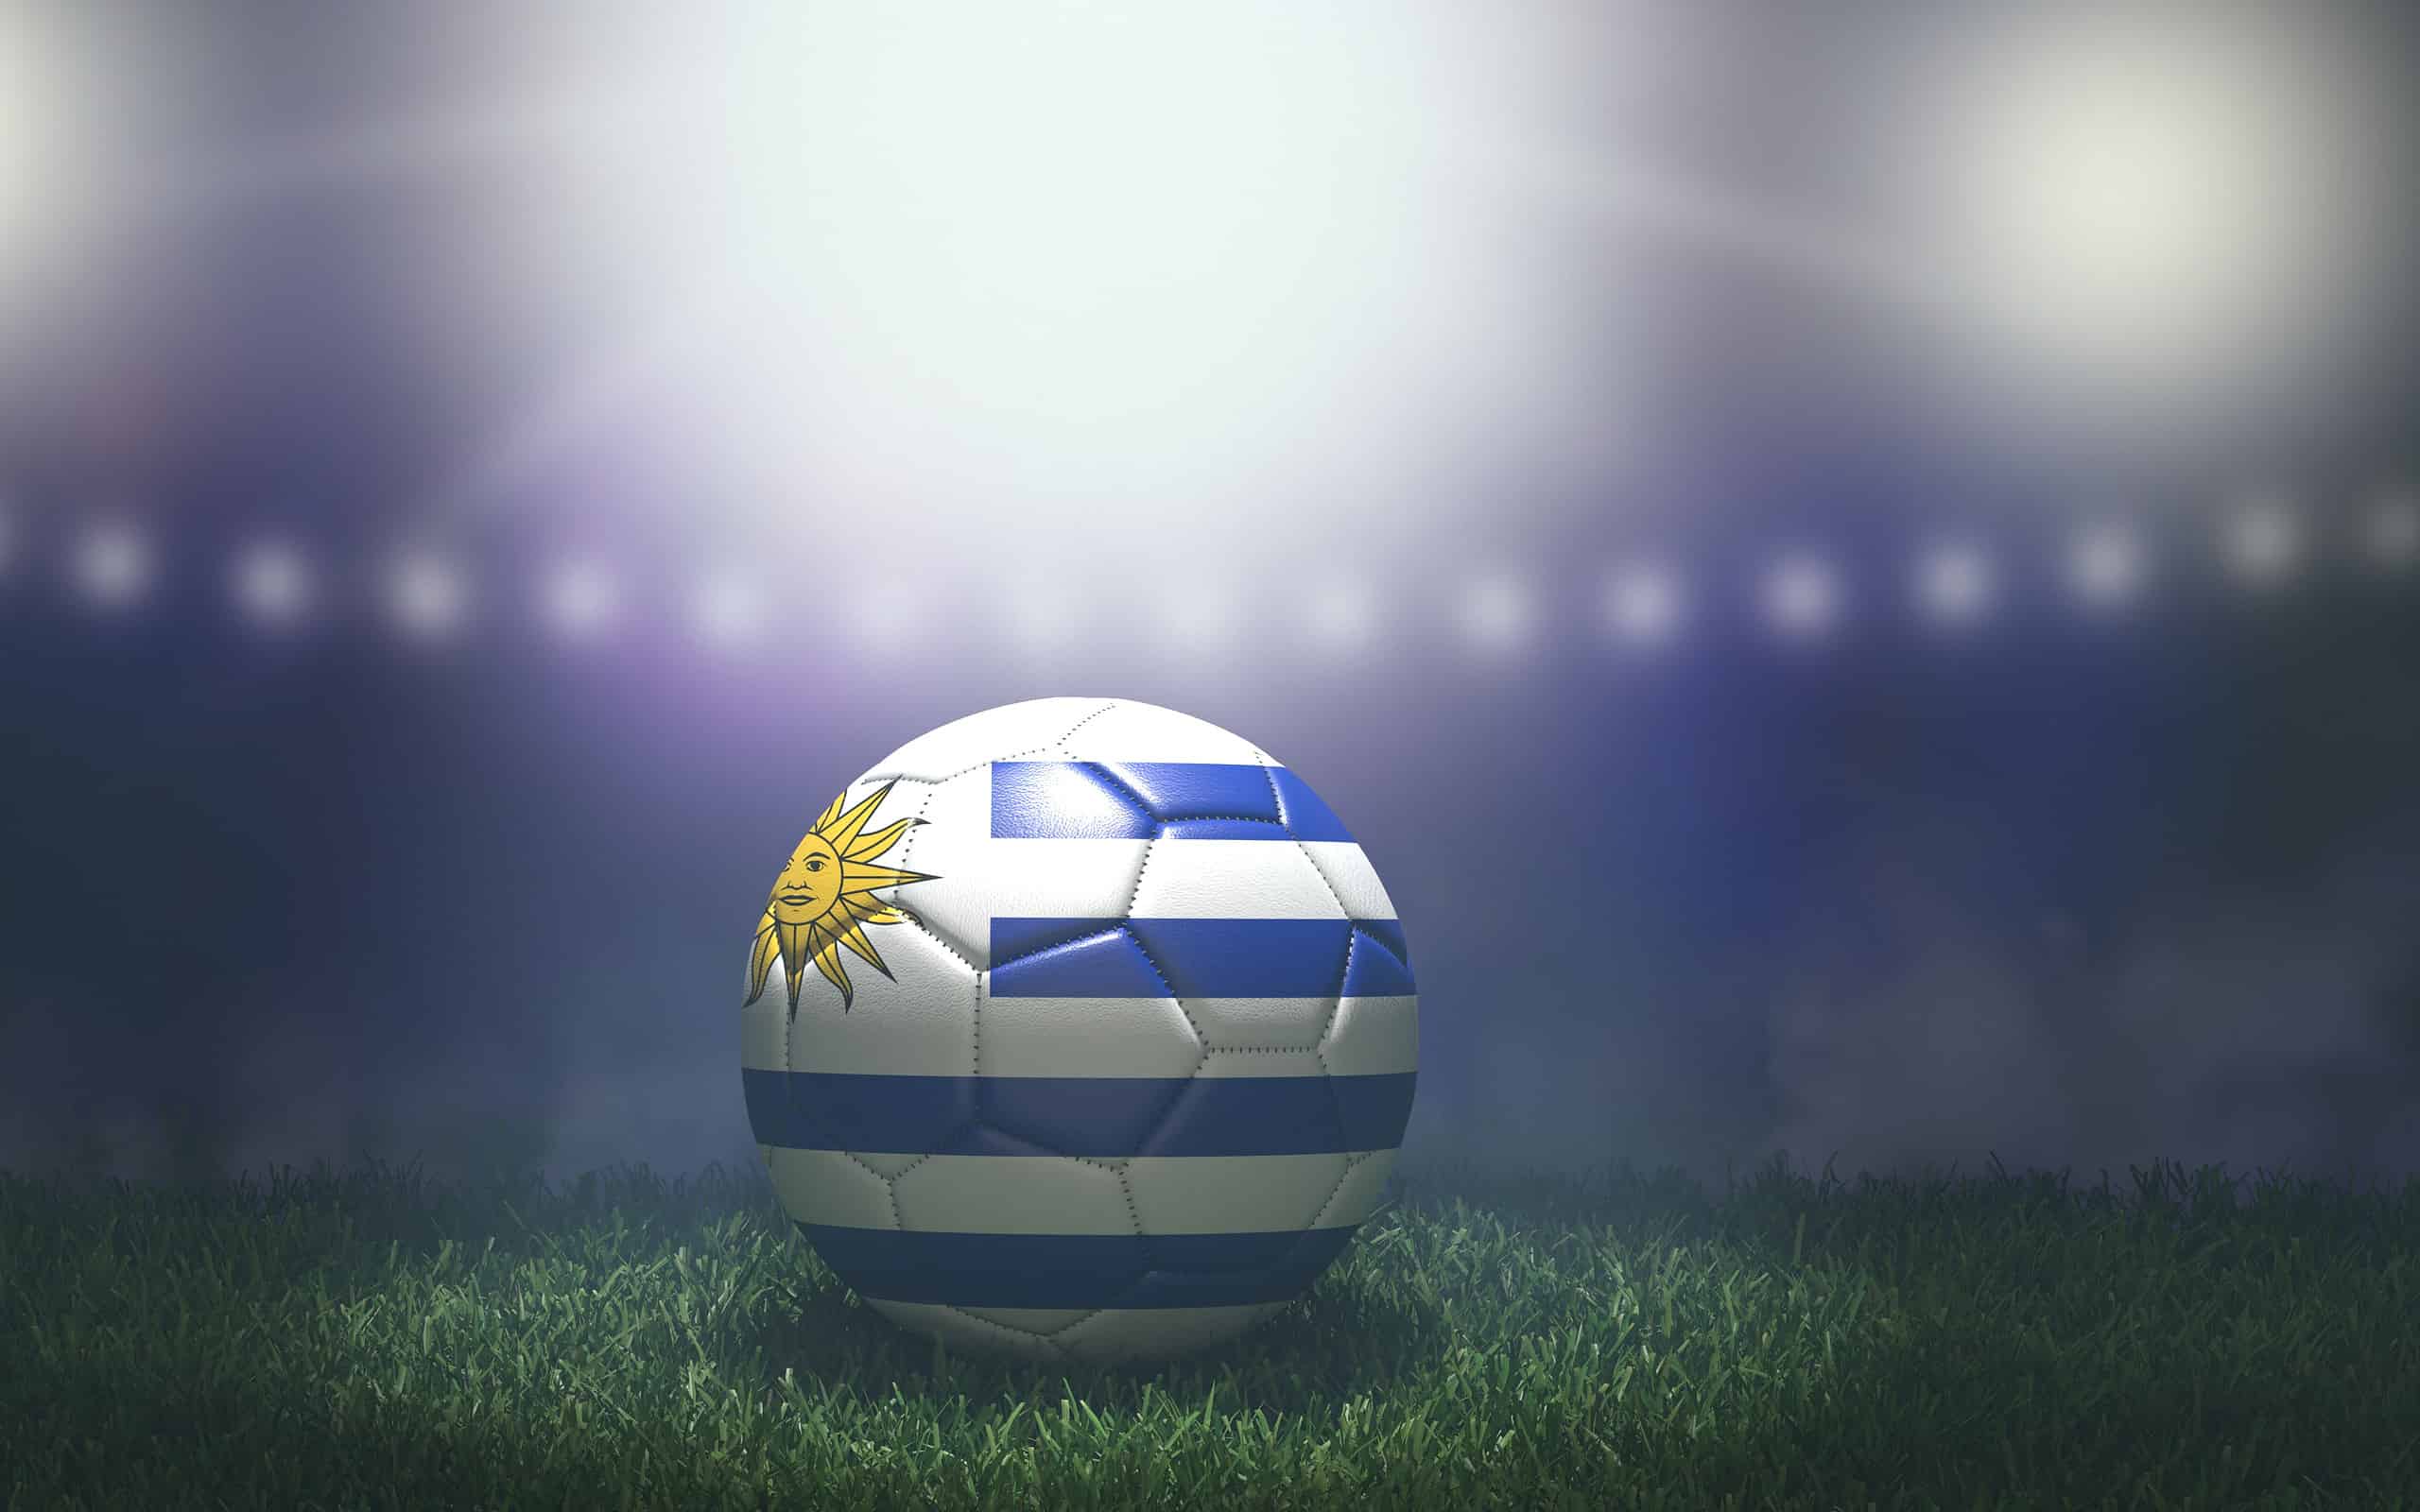 Pallone da calcio nei colori della bandiera su uno sfondo luminoso e sfocato dello stadio.  Uruguay.